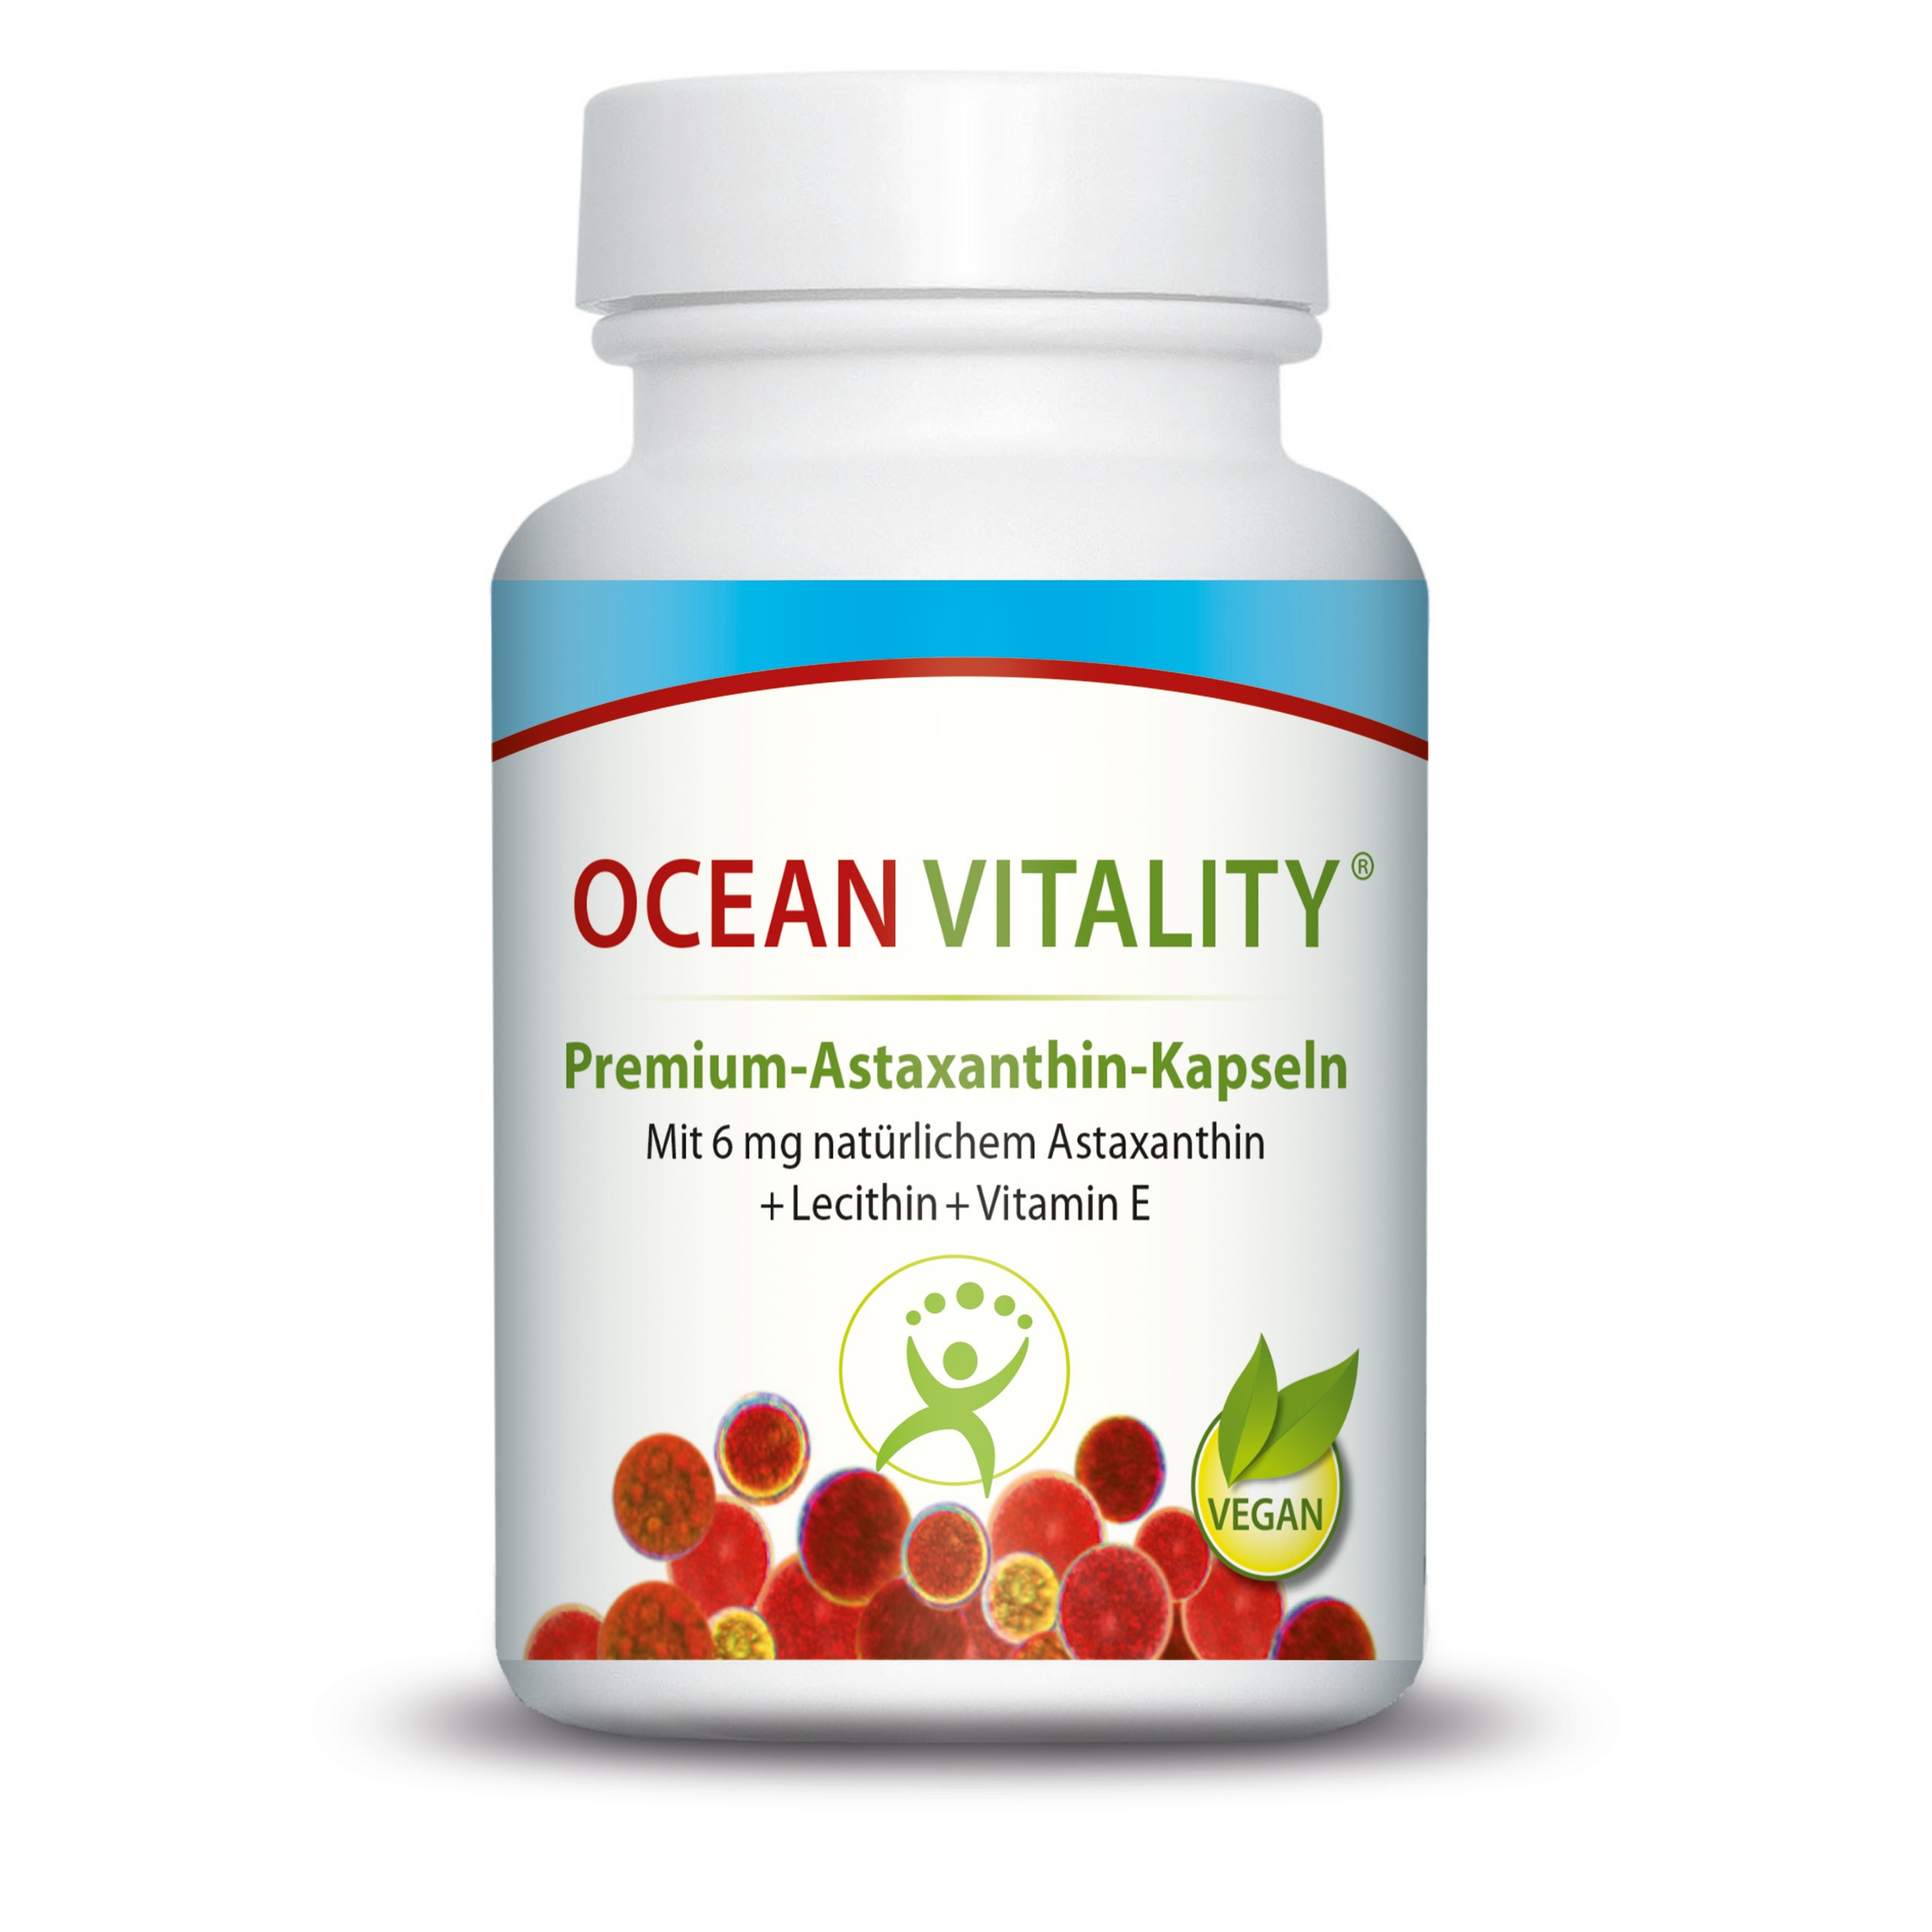 Ocean Vitality Nahrungsergänzung von der Marine Therapy Solutions GmbH